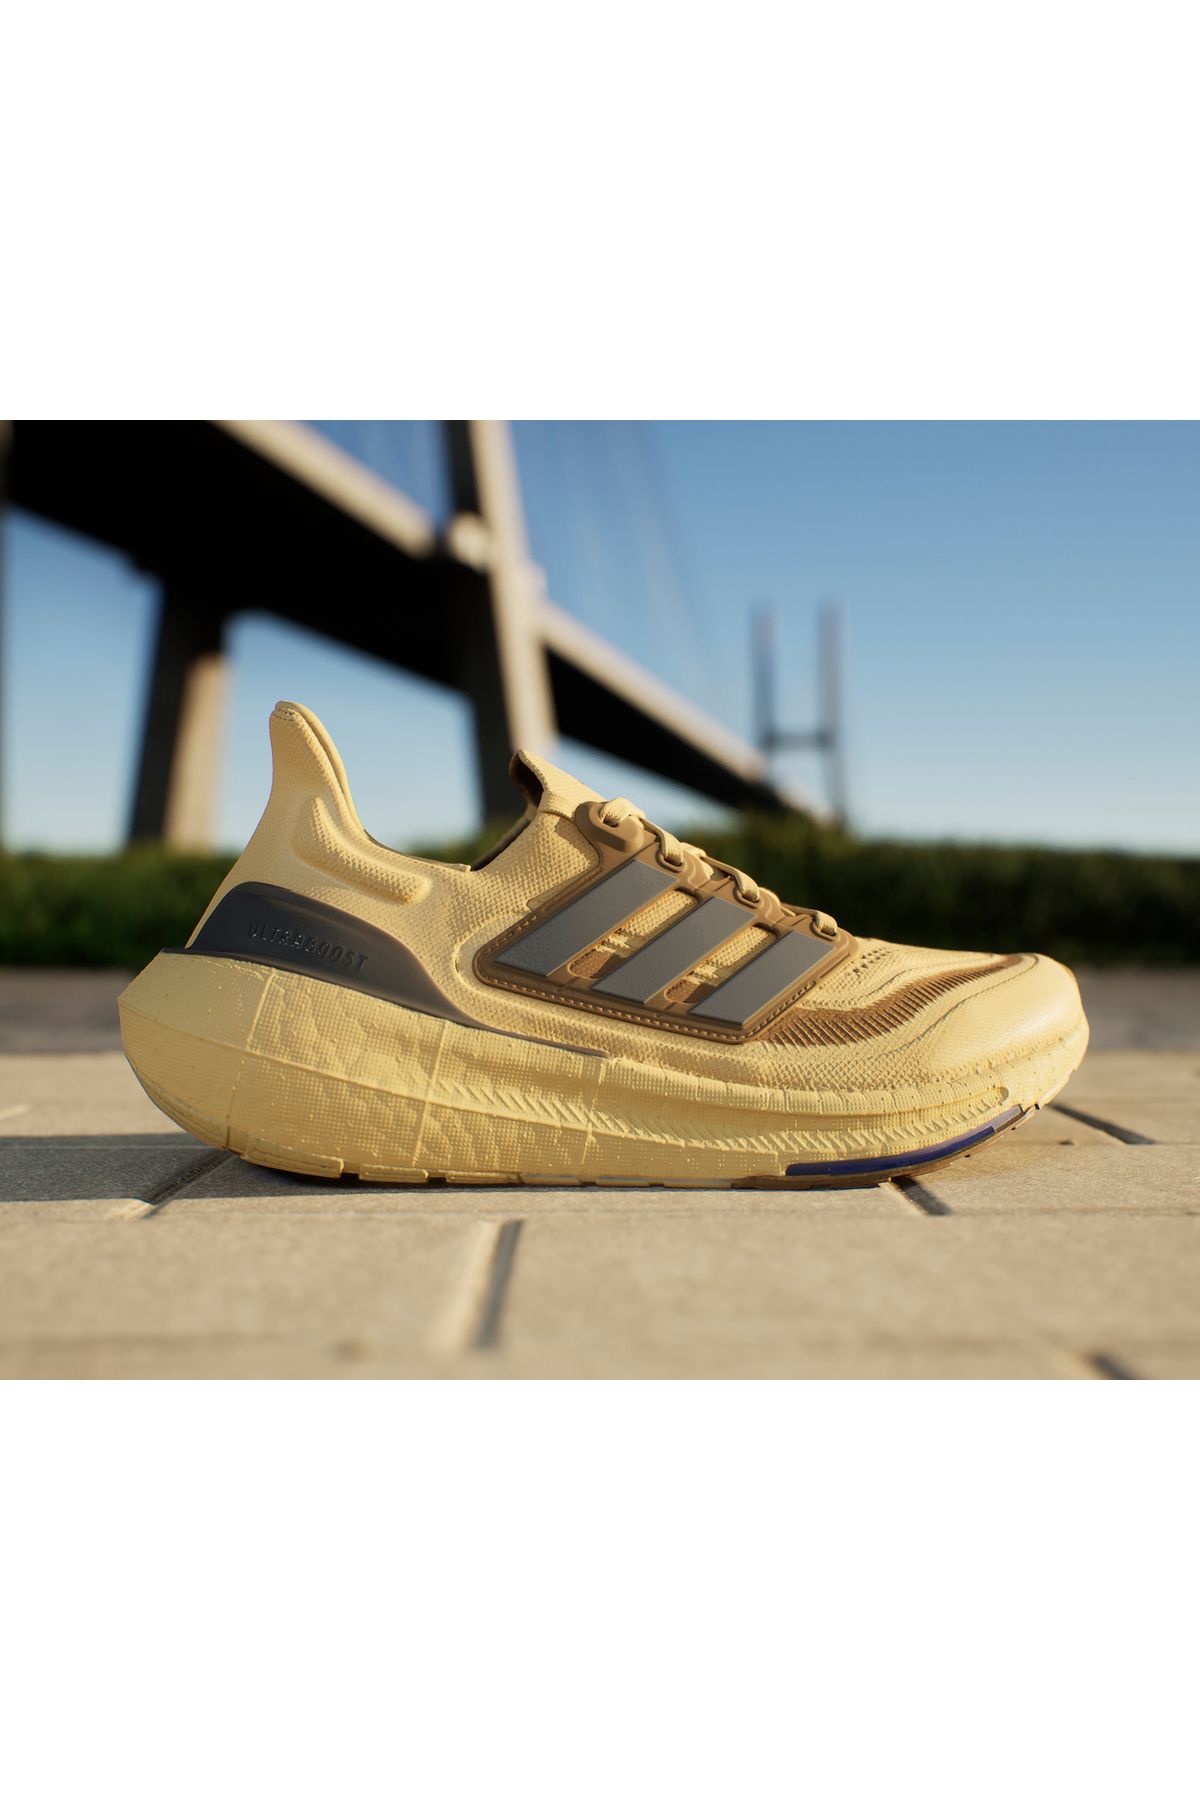 adidas Ultraboost Light Erkek Günlük Koşu Yürüyüş Ayakkabısı Sneaker